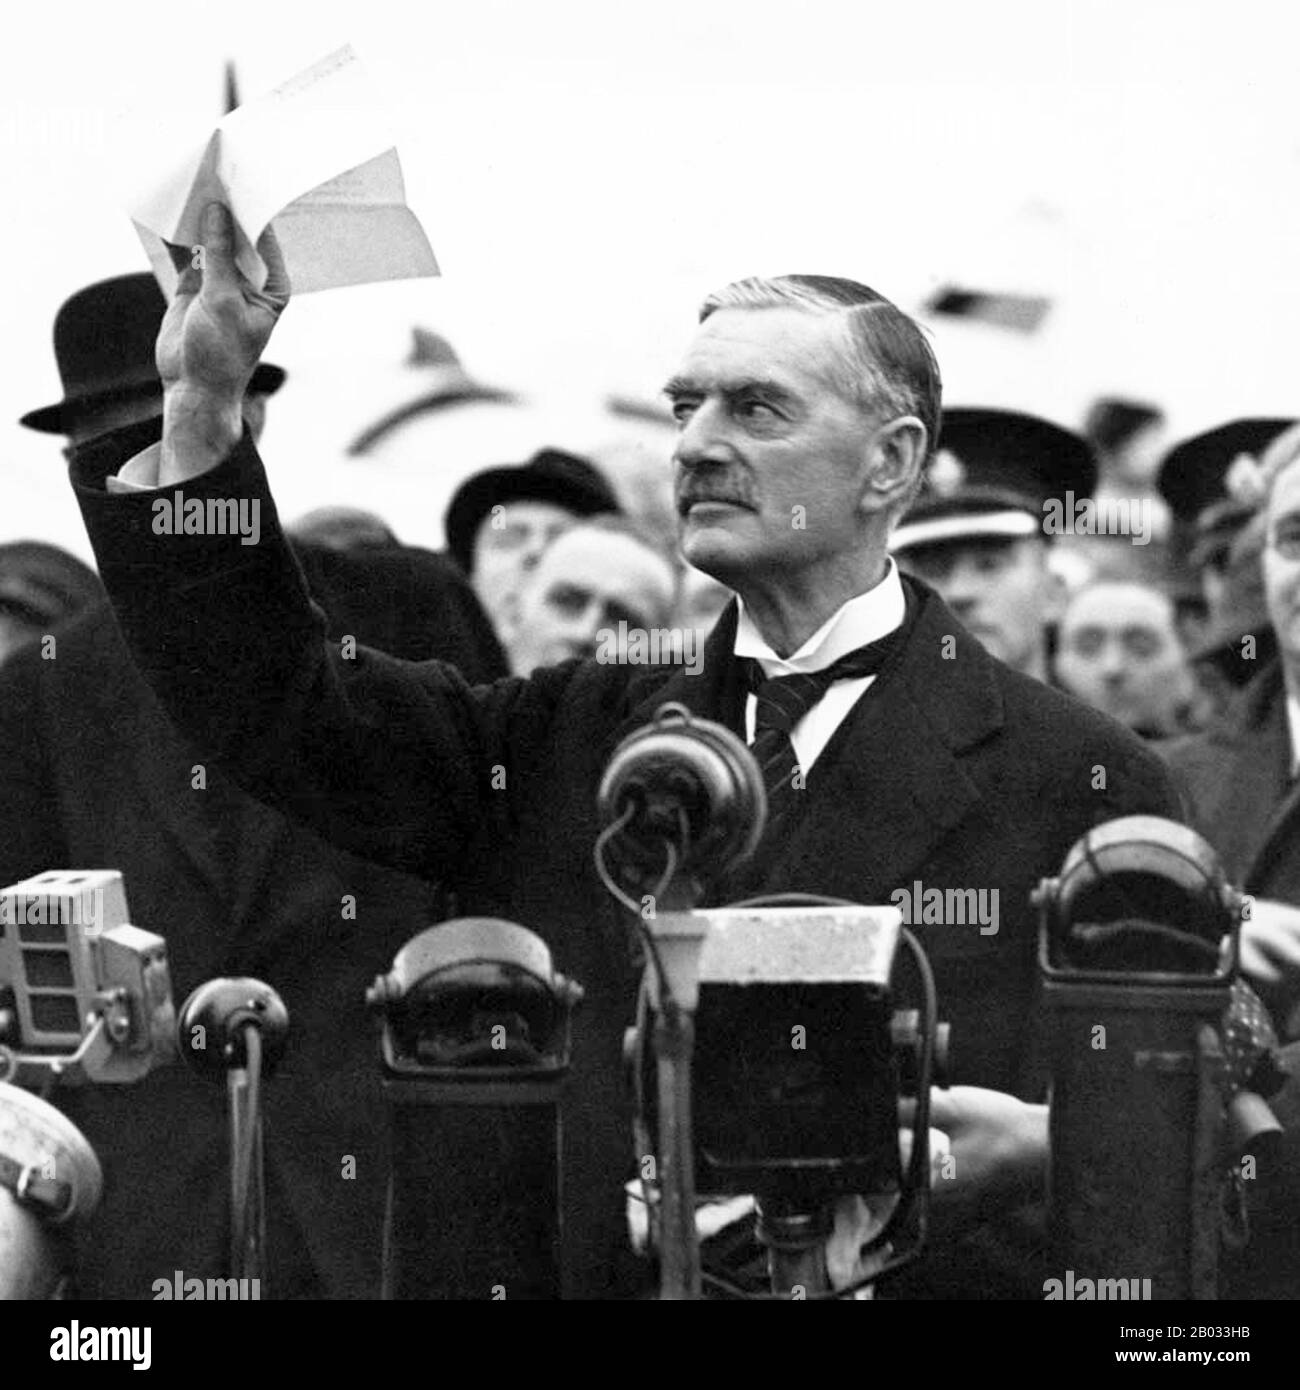 Arthur Neville Chamberlain FRS (18. März 1869 - 9. November 1940) war ein britischer konservativer Politiker, der von Mai 1937 bis Mai 1940 als Premierminister des Vereinigten Königreichs tätig war. Chamberlain ist vor allem für seine beschwichtigenden Außenpolitik bekannt, insbesondere für seine Unterzeichnung des Münchner Abkommens 1938, die den deutschsprachigen Sudetenland der Tschechoslowakei an Deutschland einräumt. Als Adolf Hitler später in Polen einmarschierte, erklärte Großbritannien Deutschland jedoch am 3. September 1939 den Krieg, und Chamberlain führte Großbritannien durch die ersten acht Monate des zweiten Weltkriegs Stockfoto